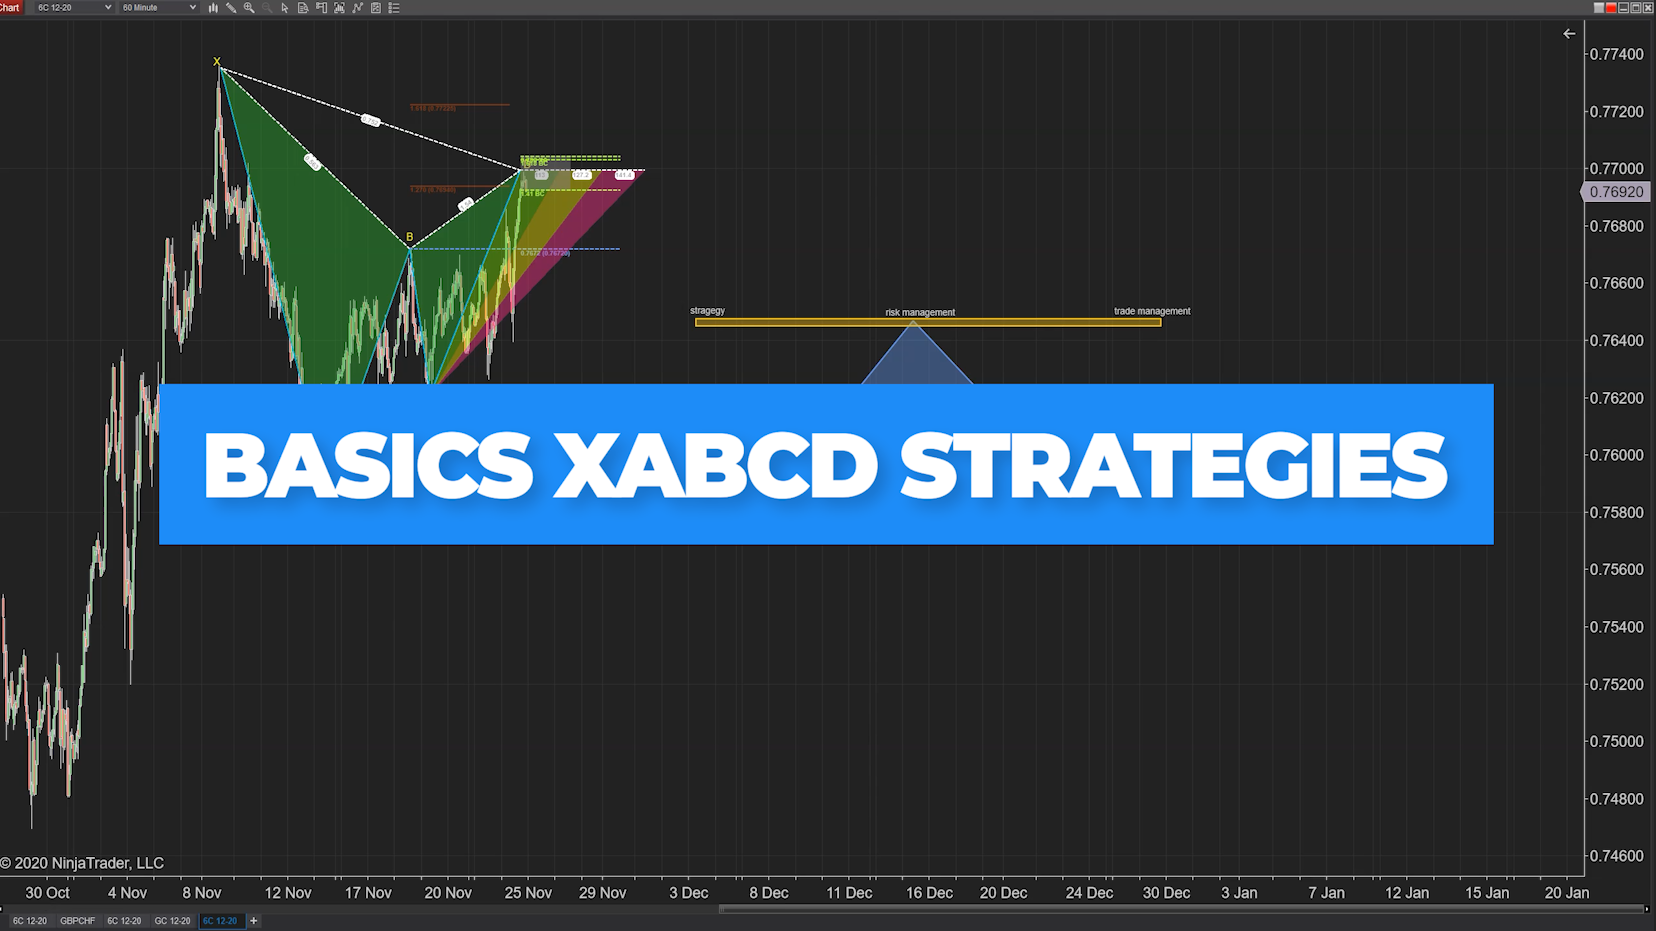 Basics xabcd strategies